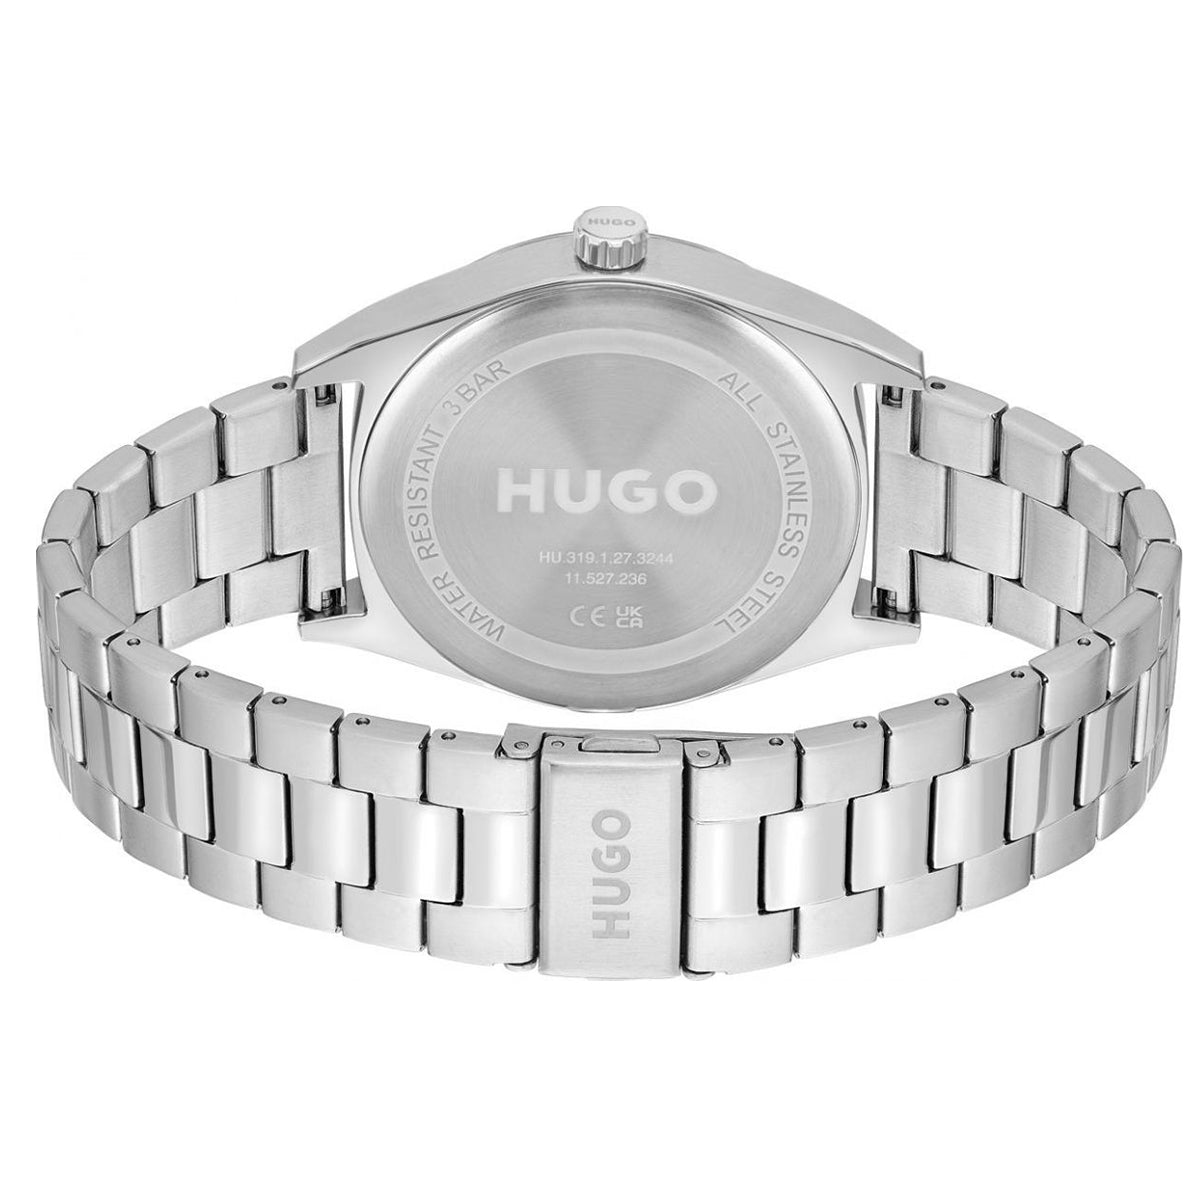 Hugo Boss - Make - HB153.0251